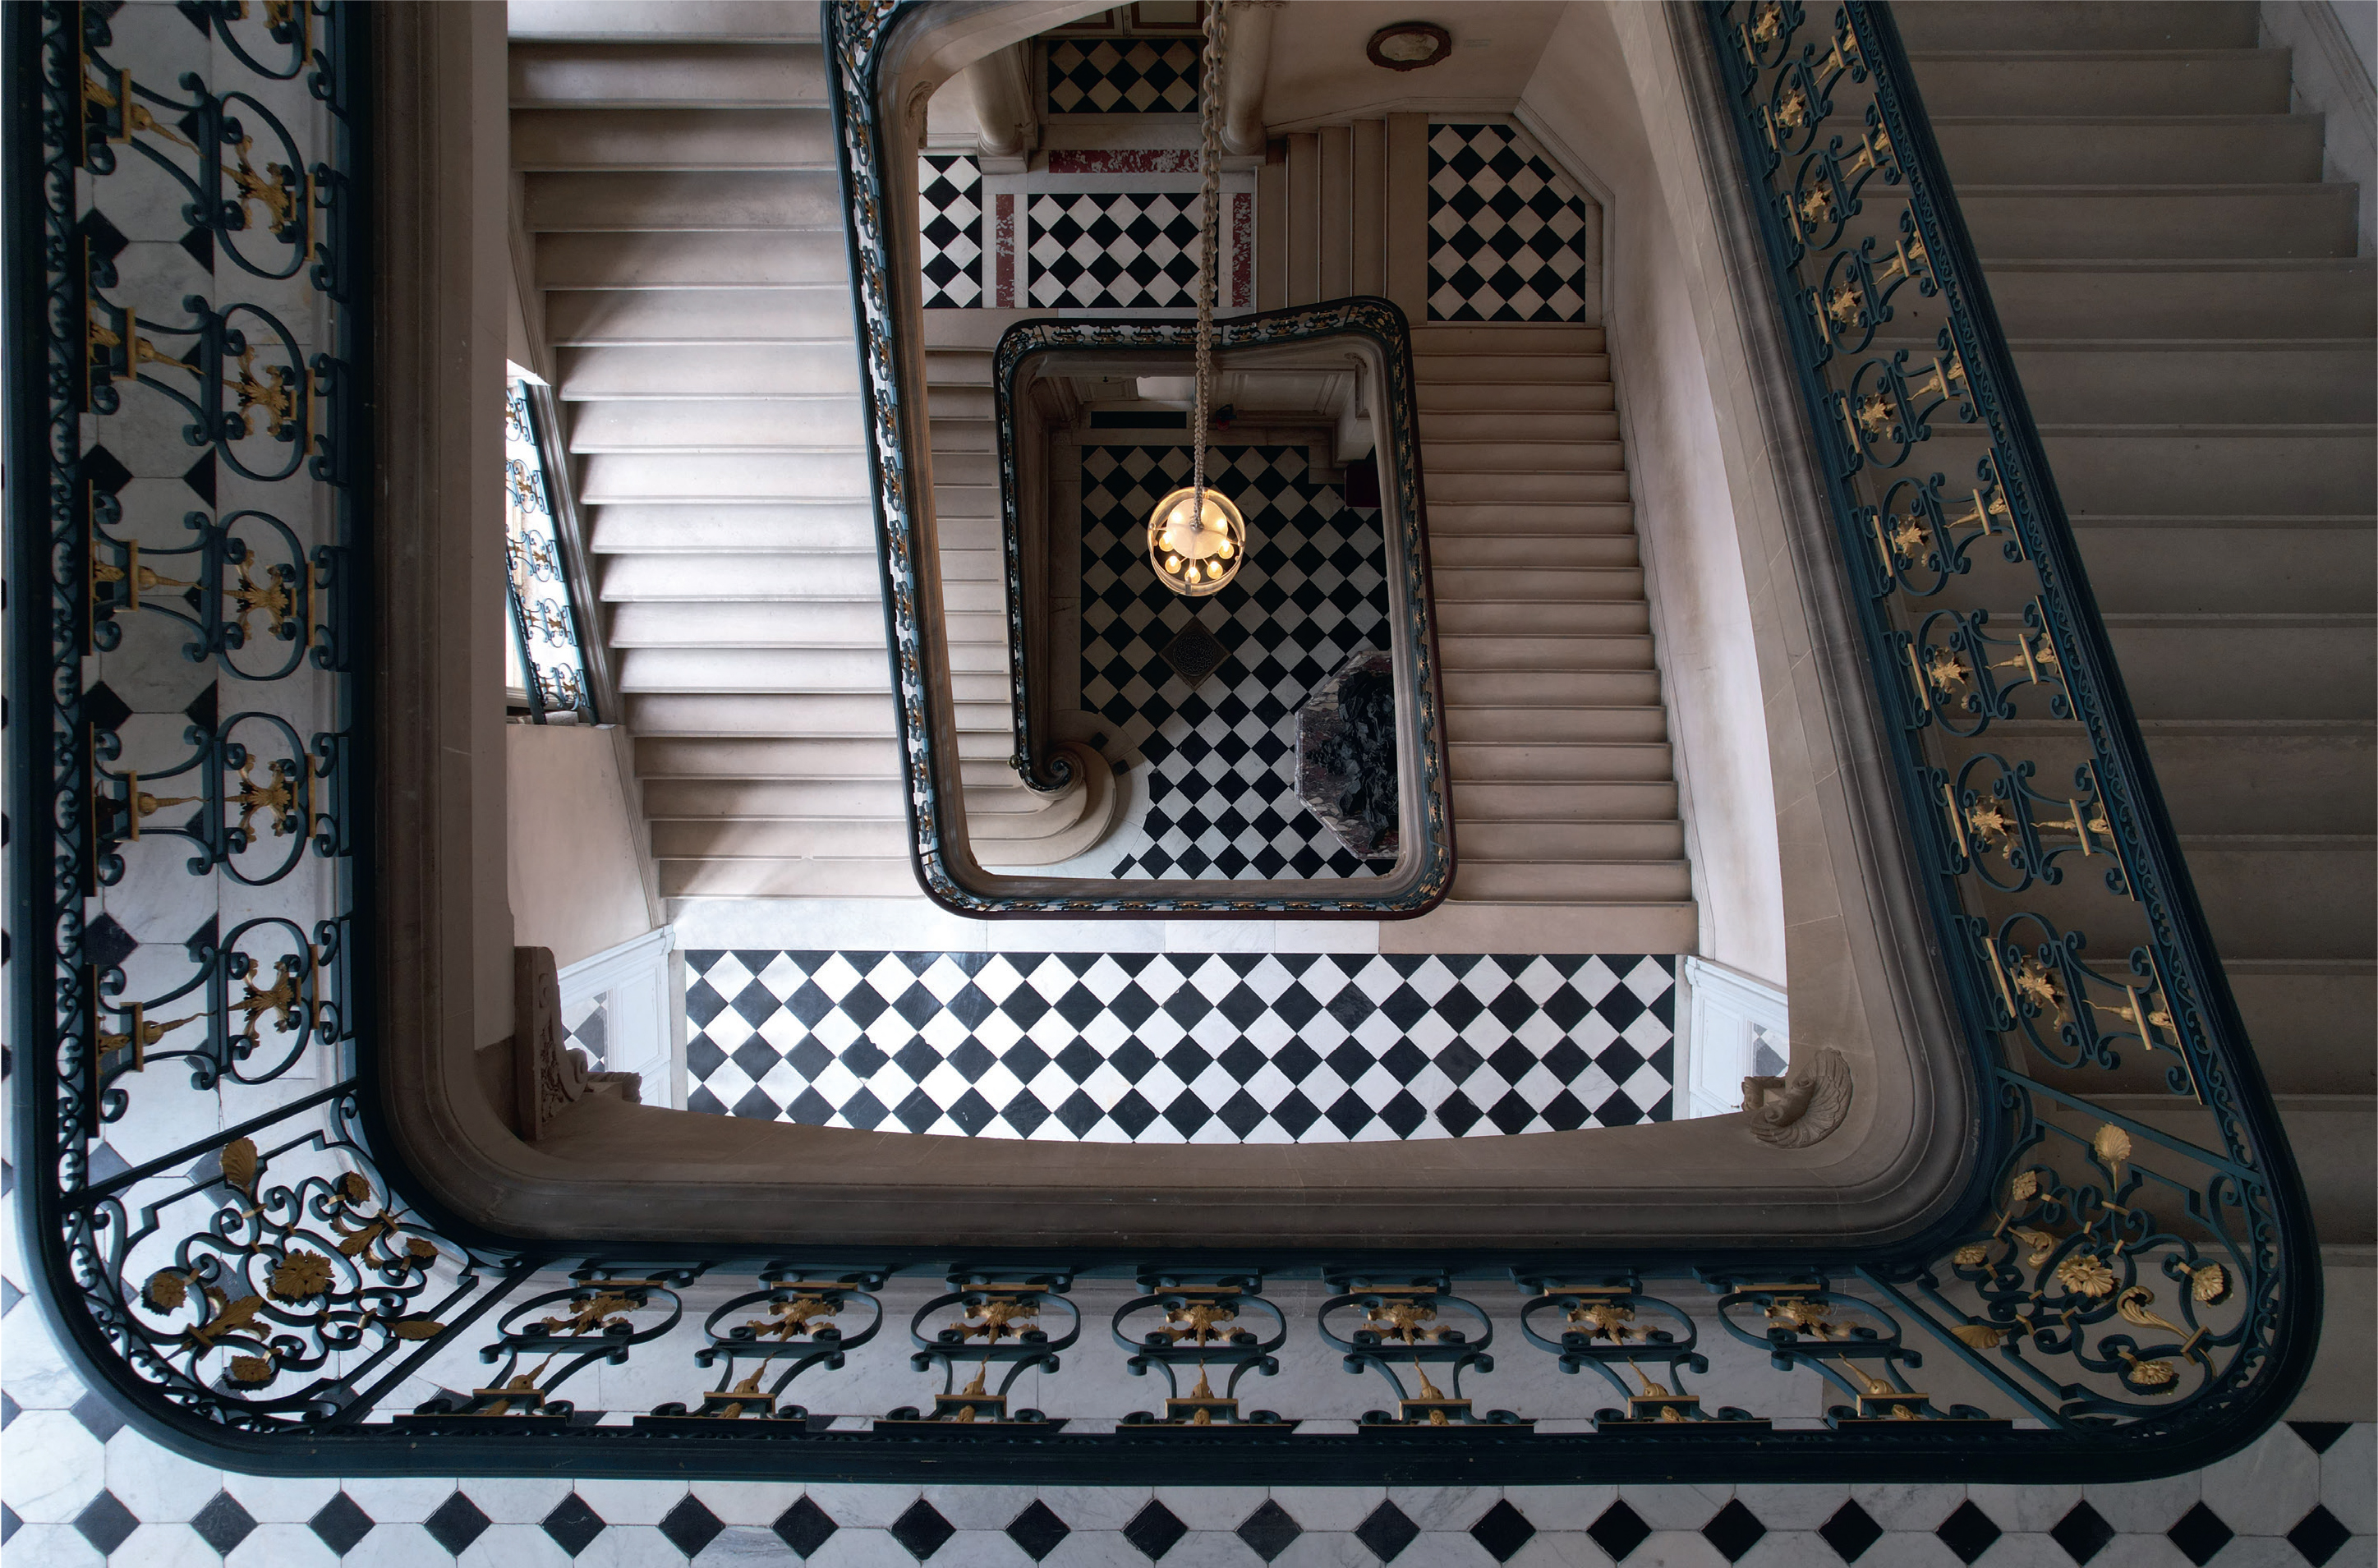 Le XIXe siècle a vu Versailles se modifier, grâce, entre autres, au travail de l’architecte Charles-Auguste Questel, à partir de 1851, qui conçoit cet escalier en fer forgé et motifs dorés, près de l’Opéra royal. Thomas Garnier